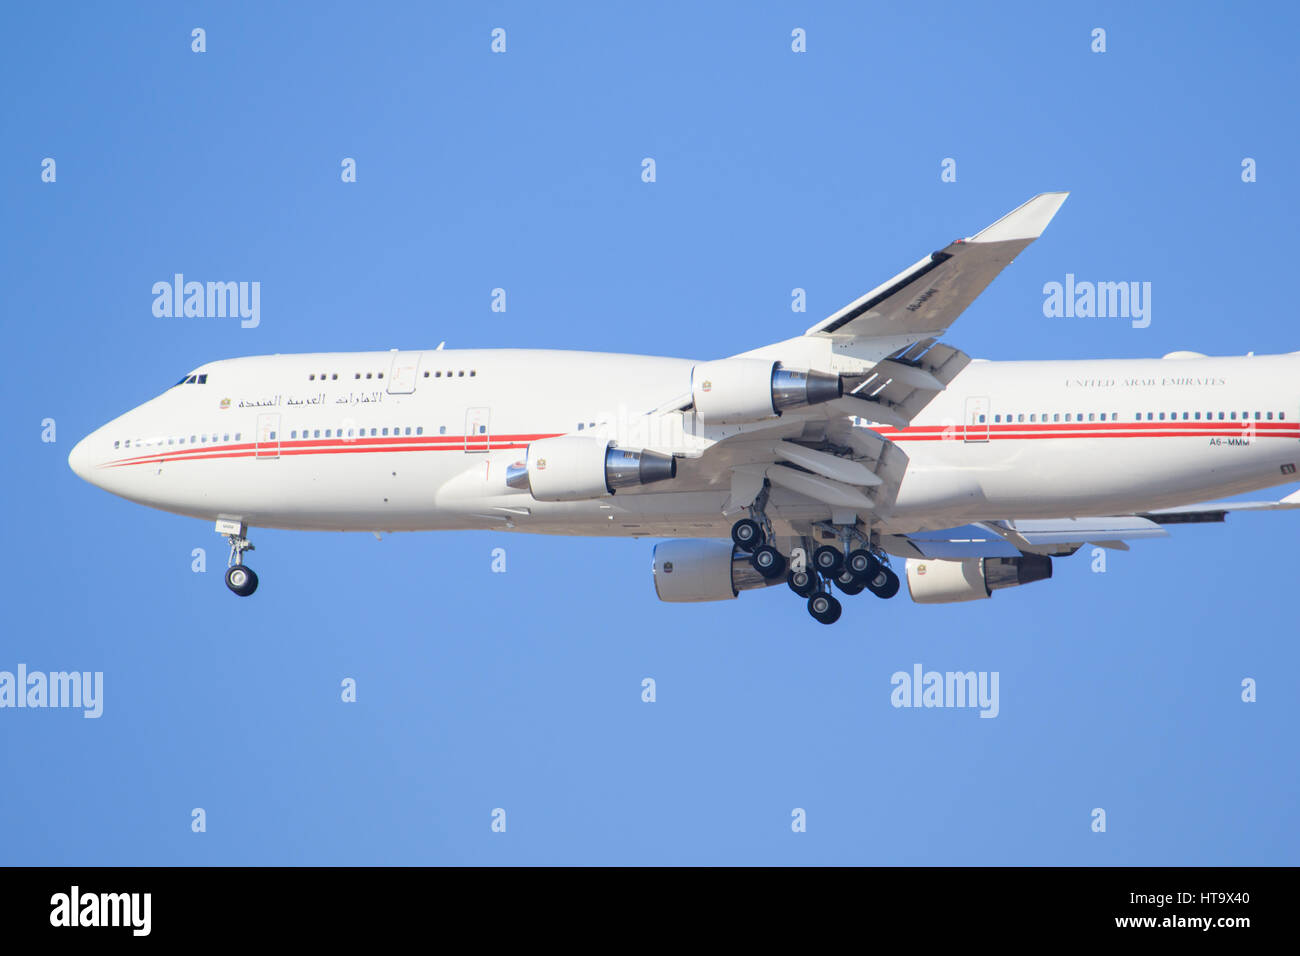 Dubaï/Émirats arabes unis le 9 mars 2017 : Boeing 747 de Fly Dubai, à l'atterrissage à l'aéroport de Dubaï. Banque D'Images